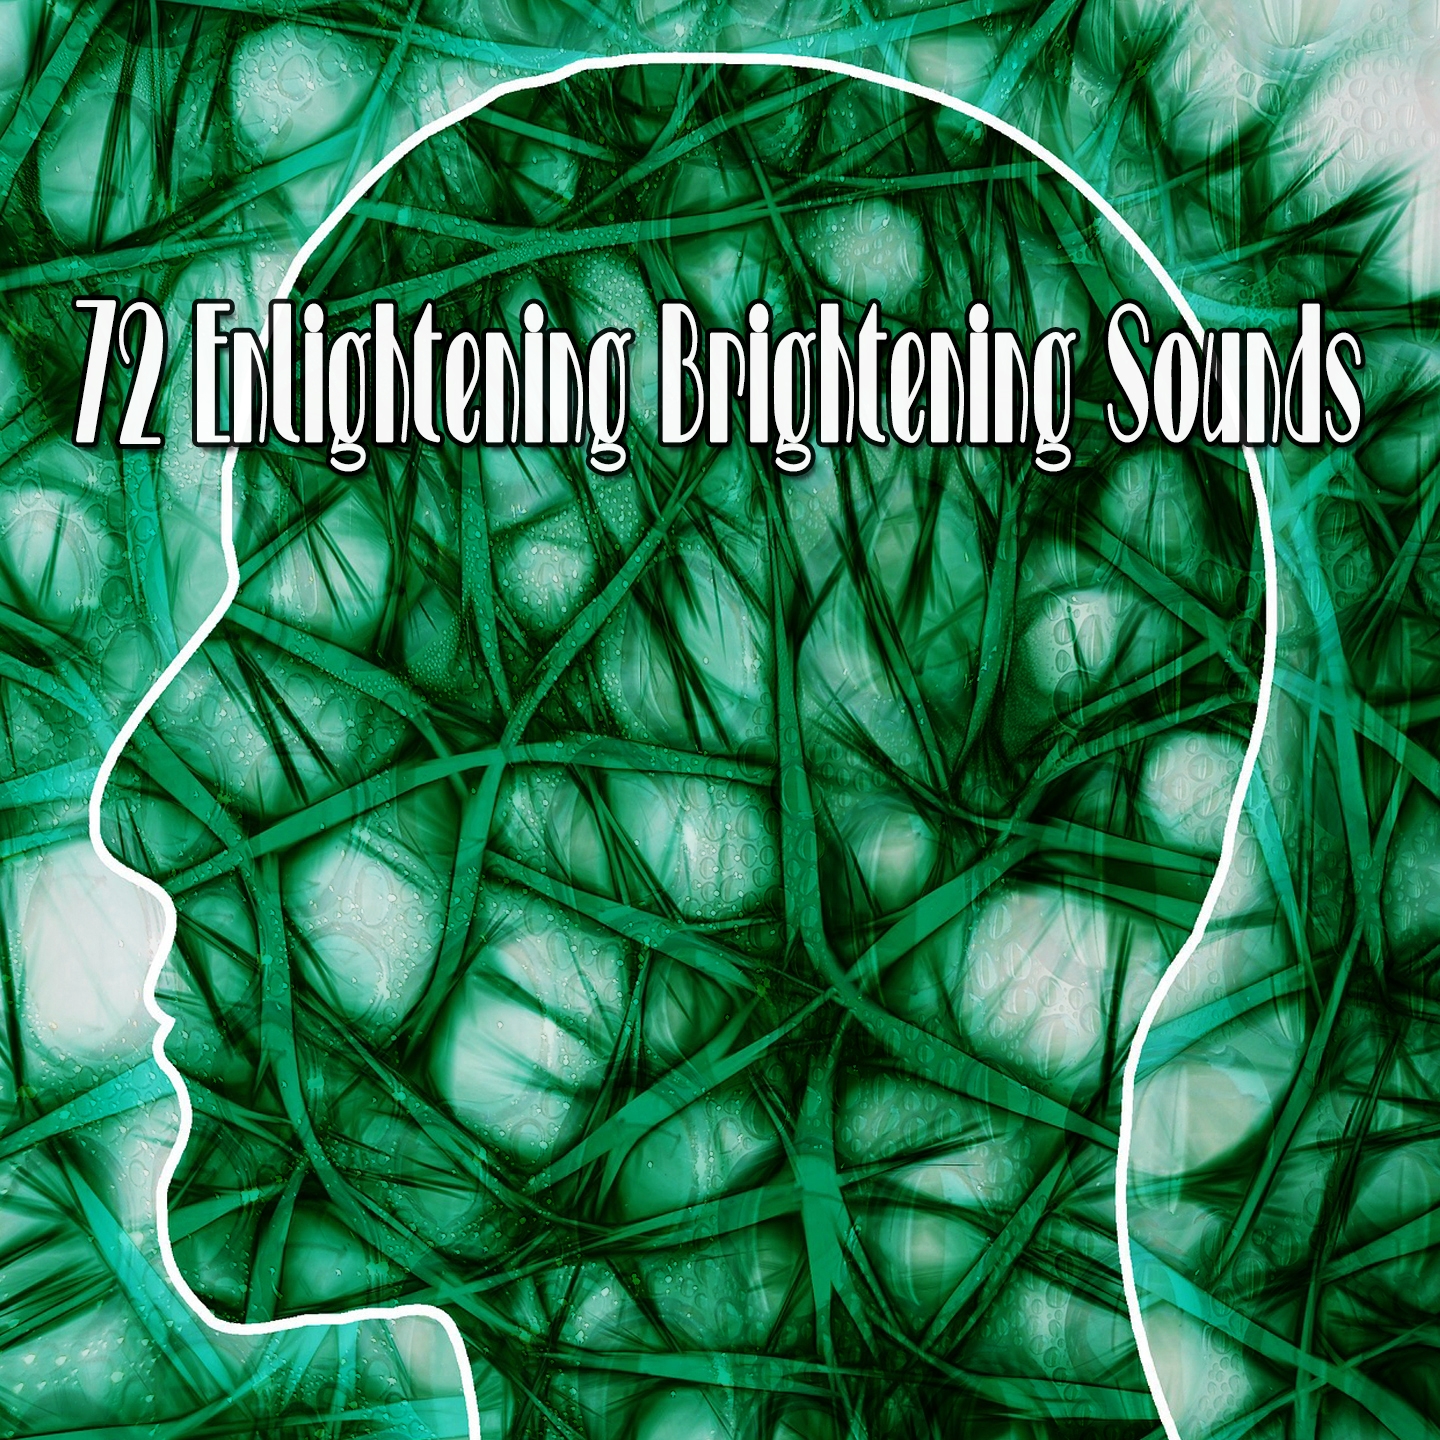 72 Enlightening Brightening Sounds